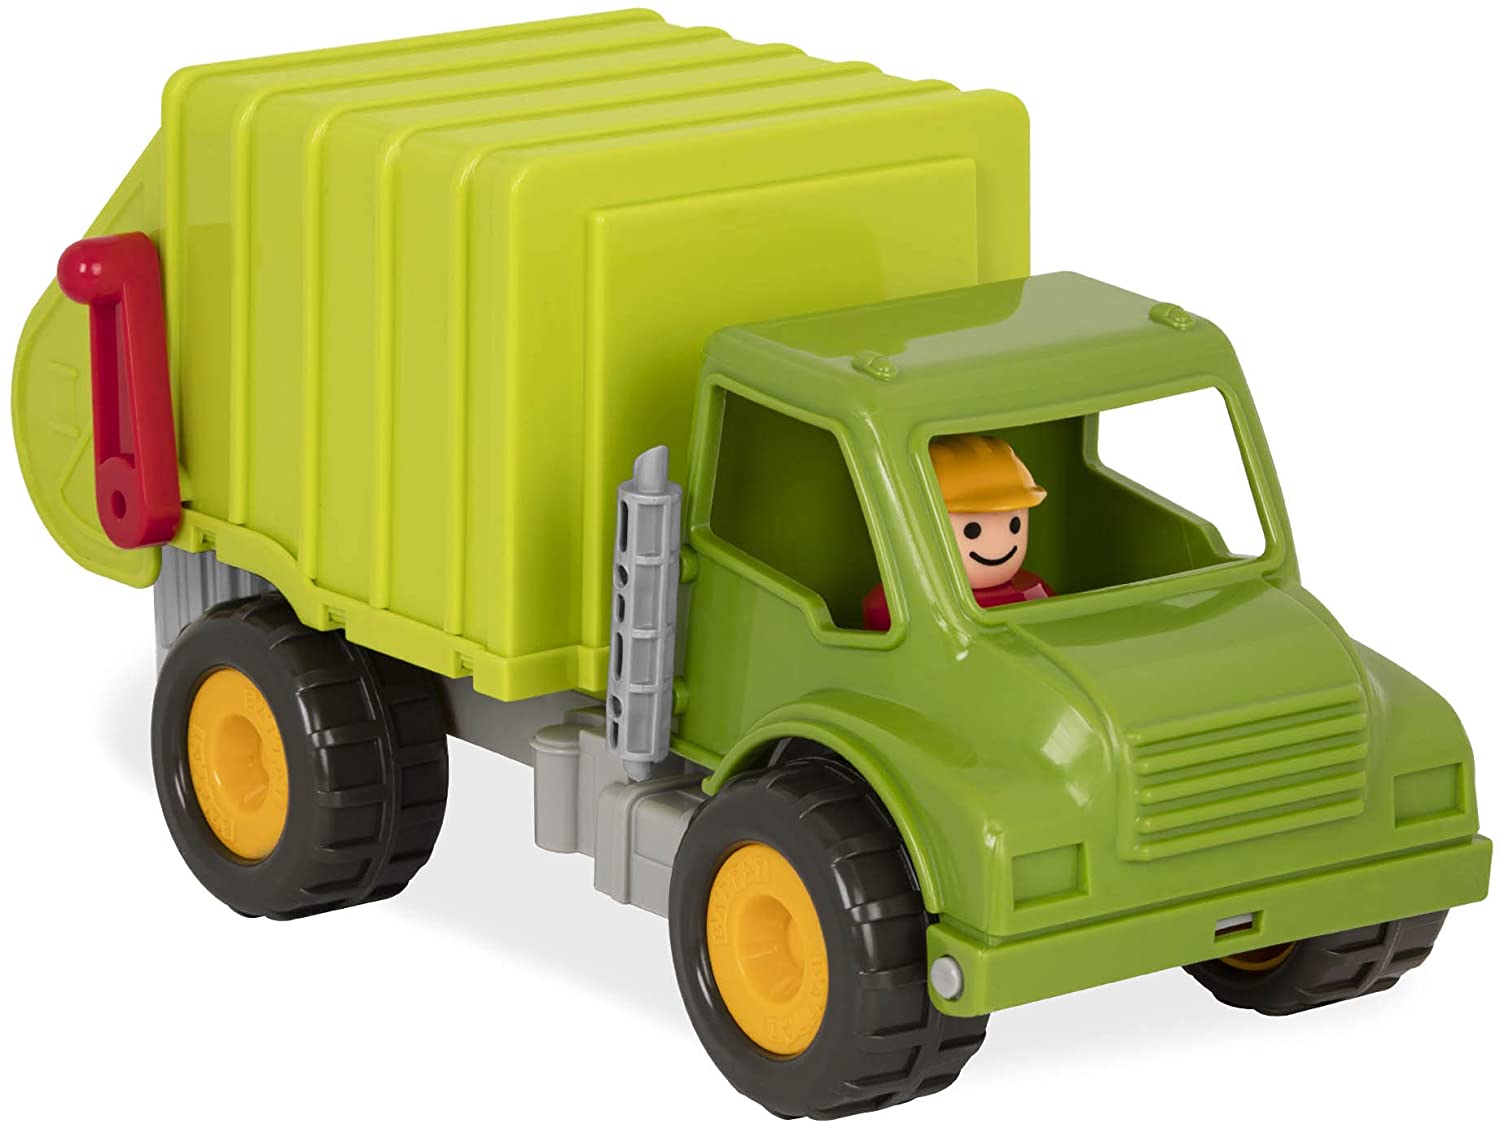 garbage truck toy